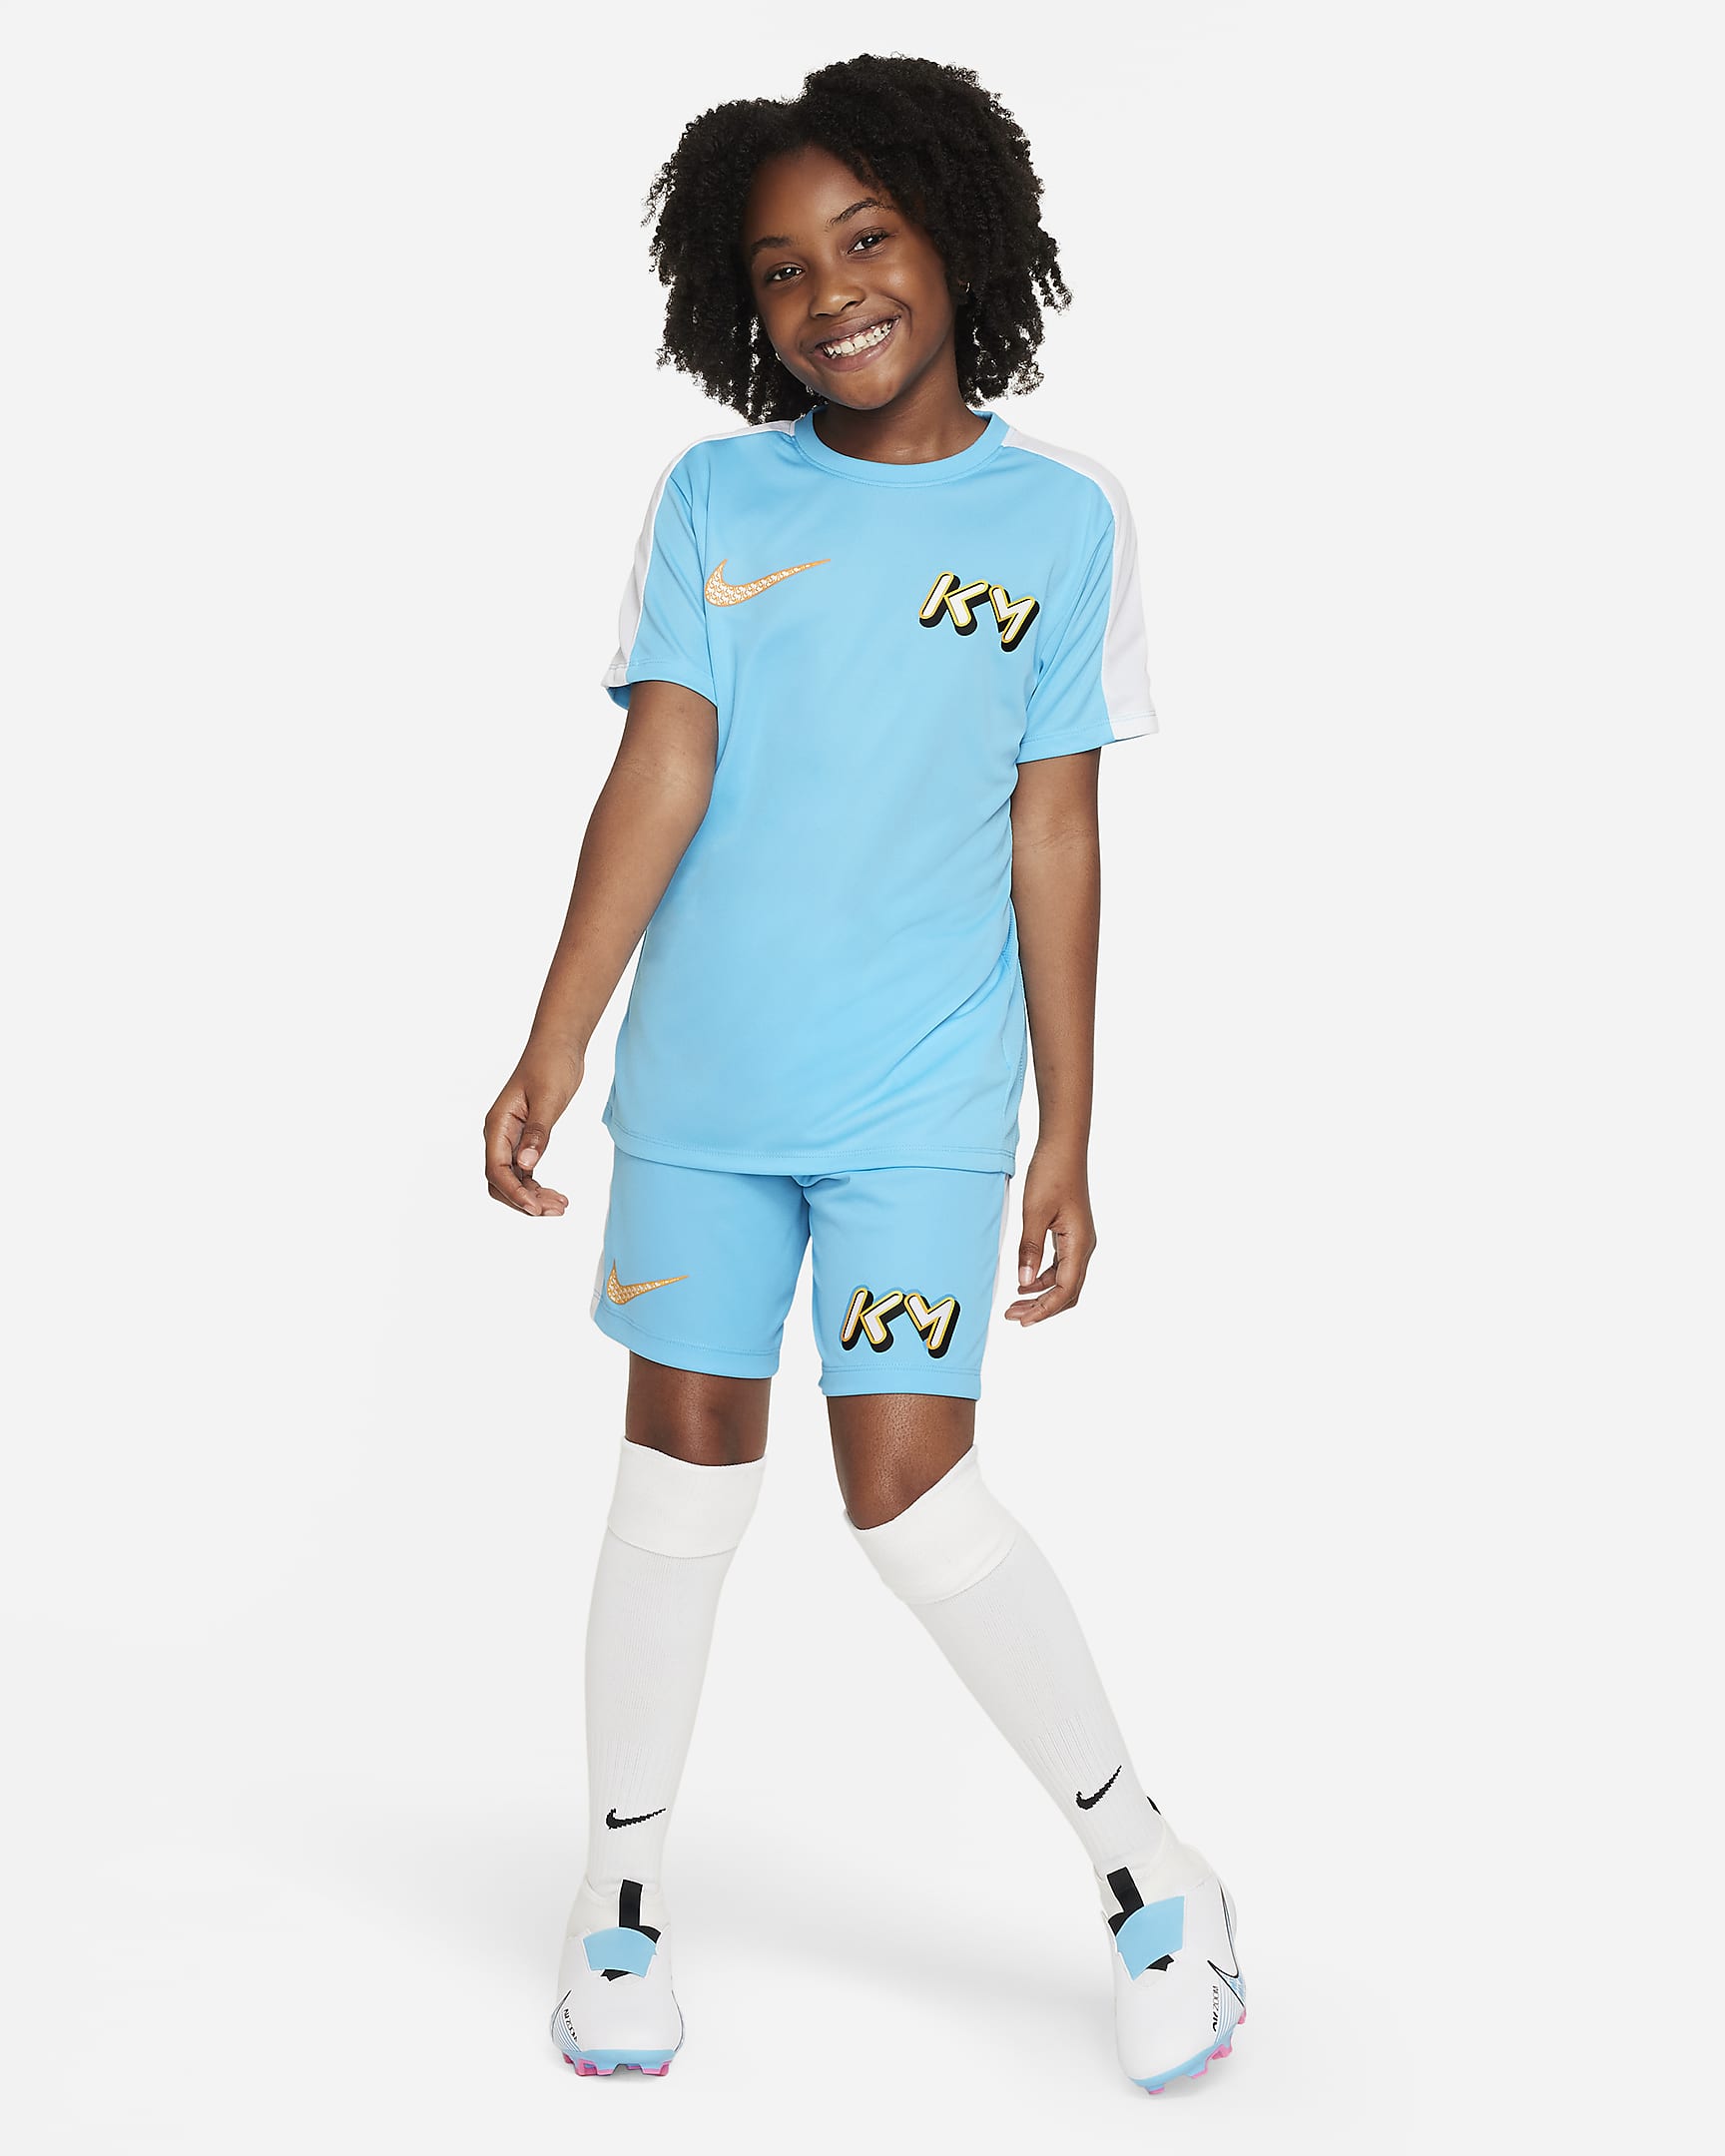 KM Dri-FIT Older Kids' Football Top. Nike PH